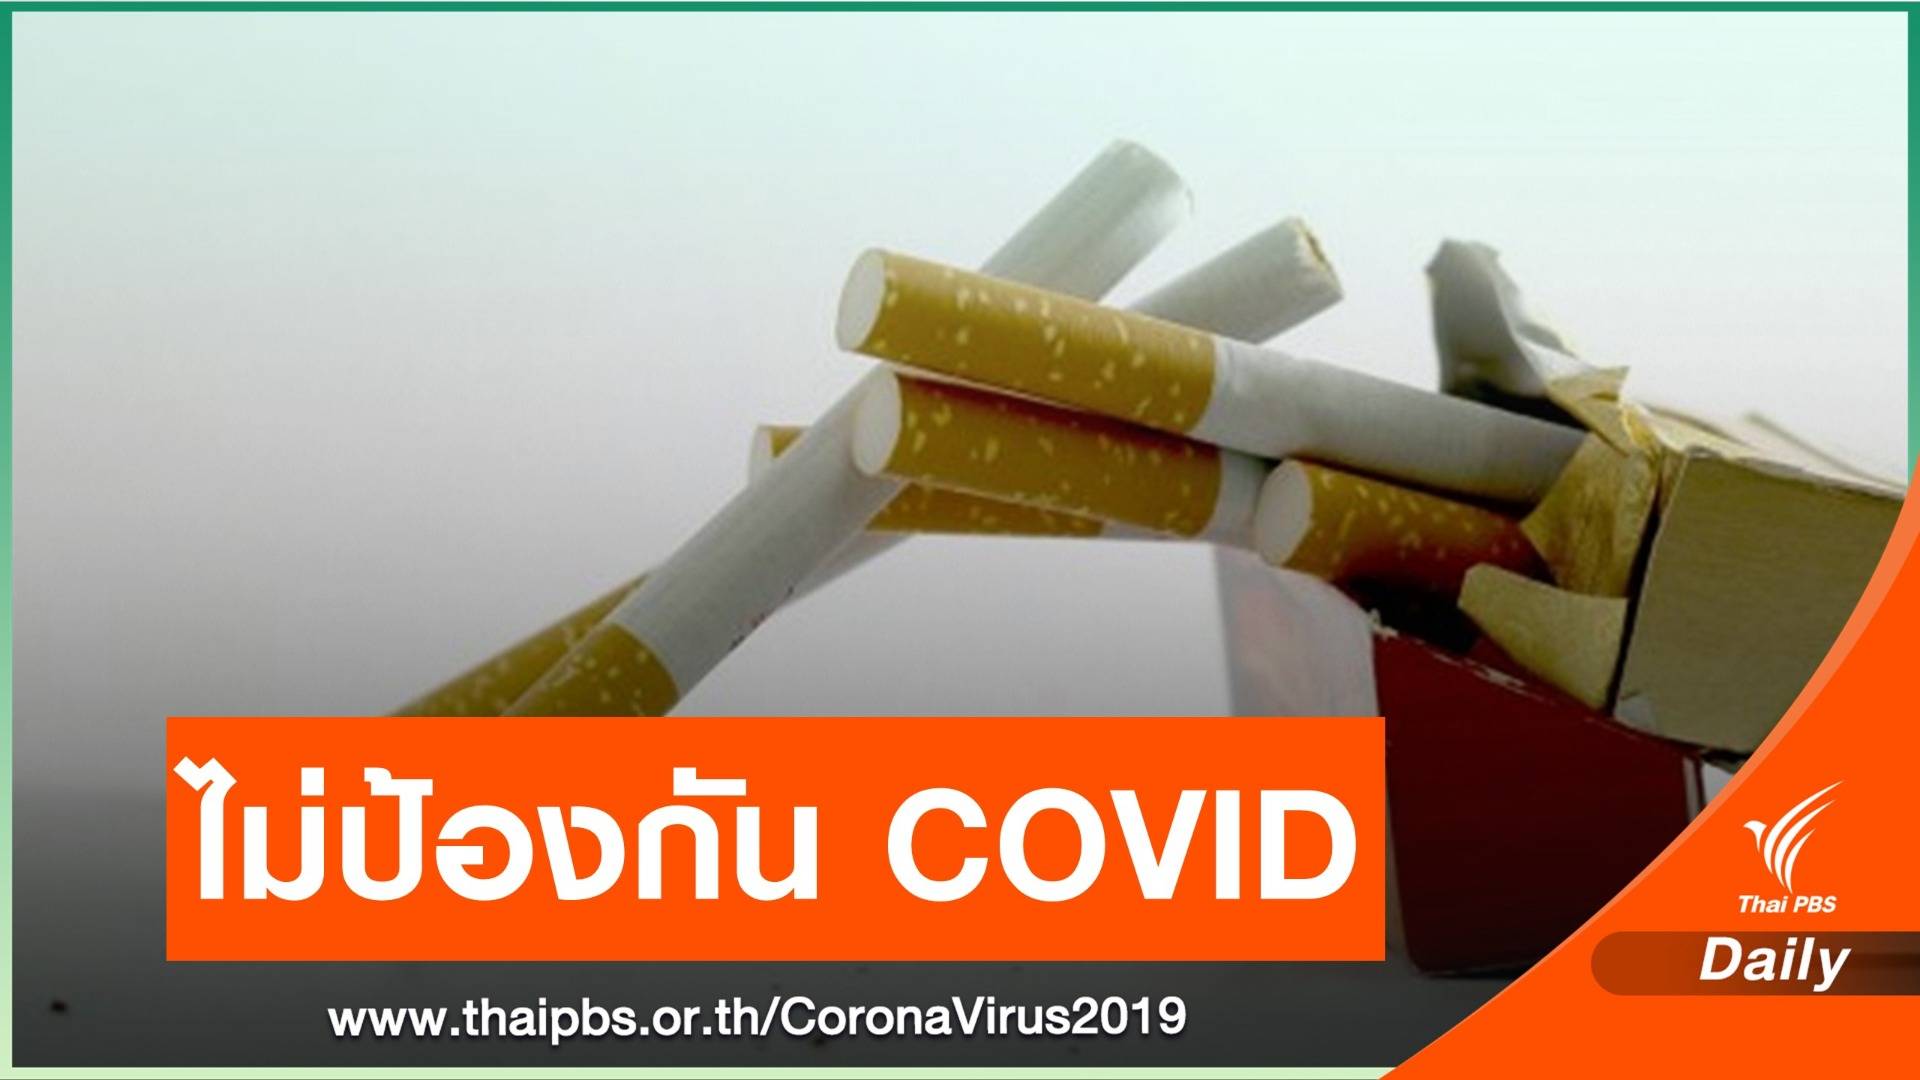 หมอย้ำสูบบุหรี่ไม่ป้องกัน COVID-19 เตือนอย่าหลงเชื่อ